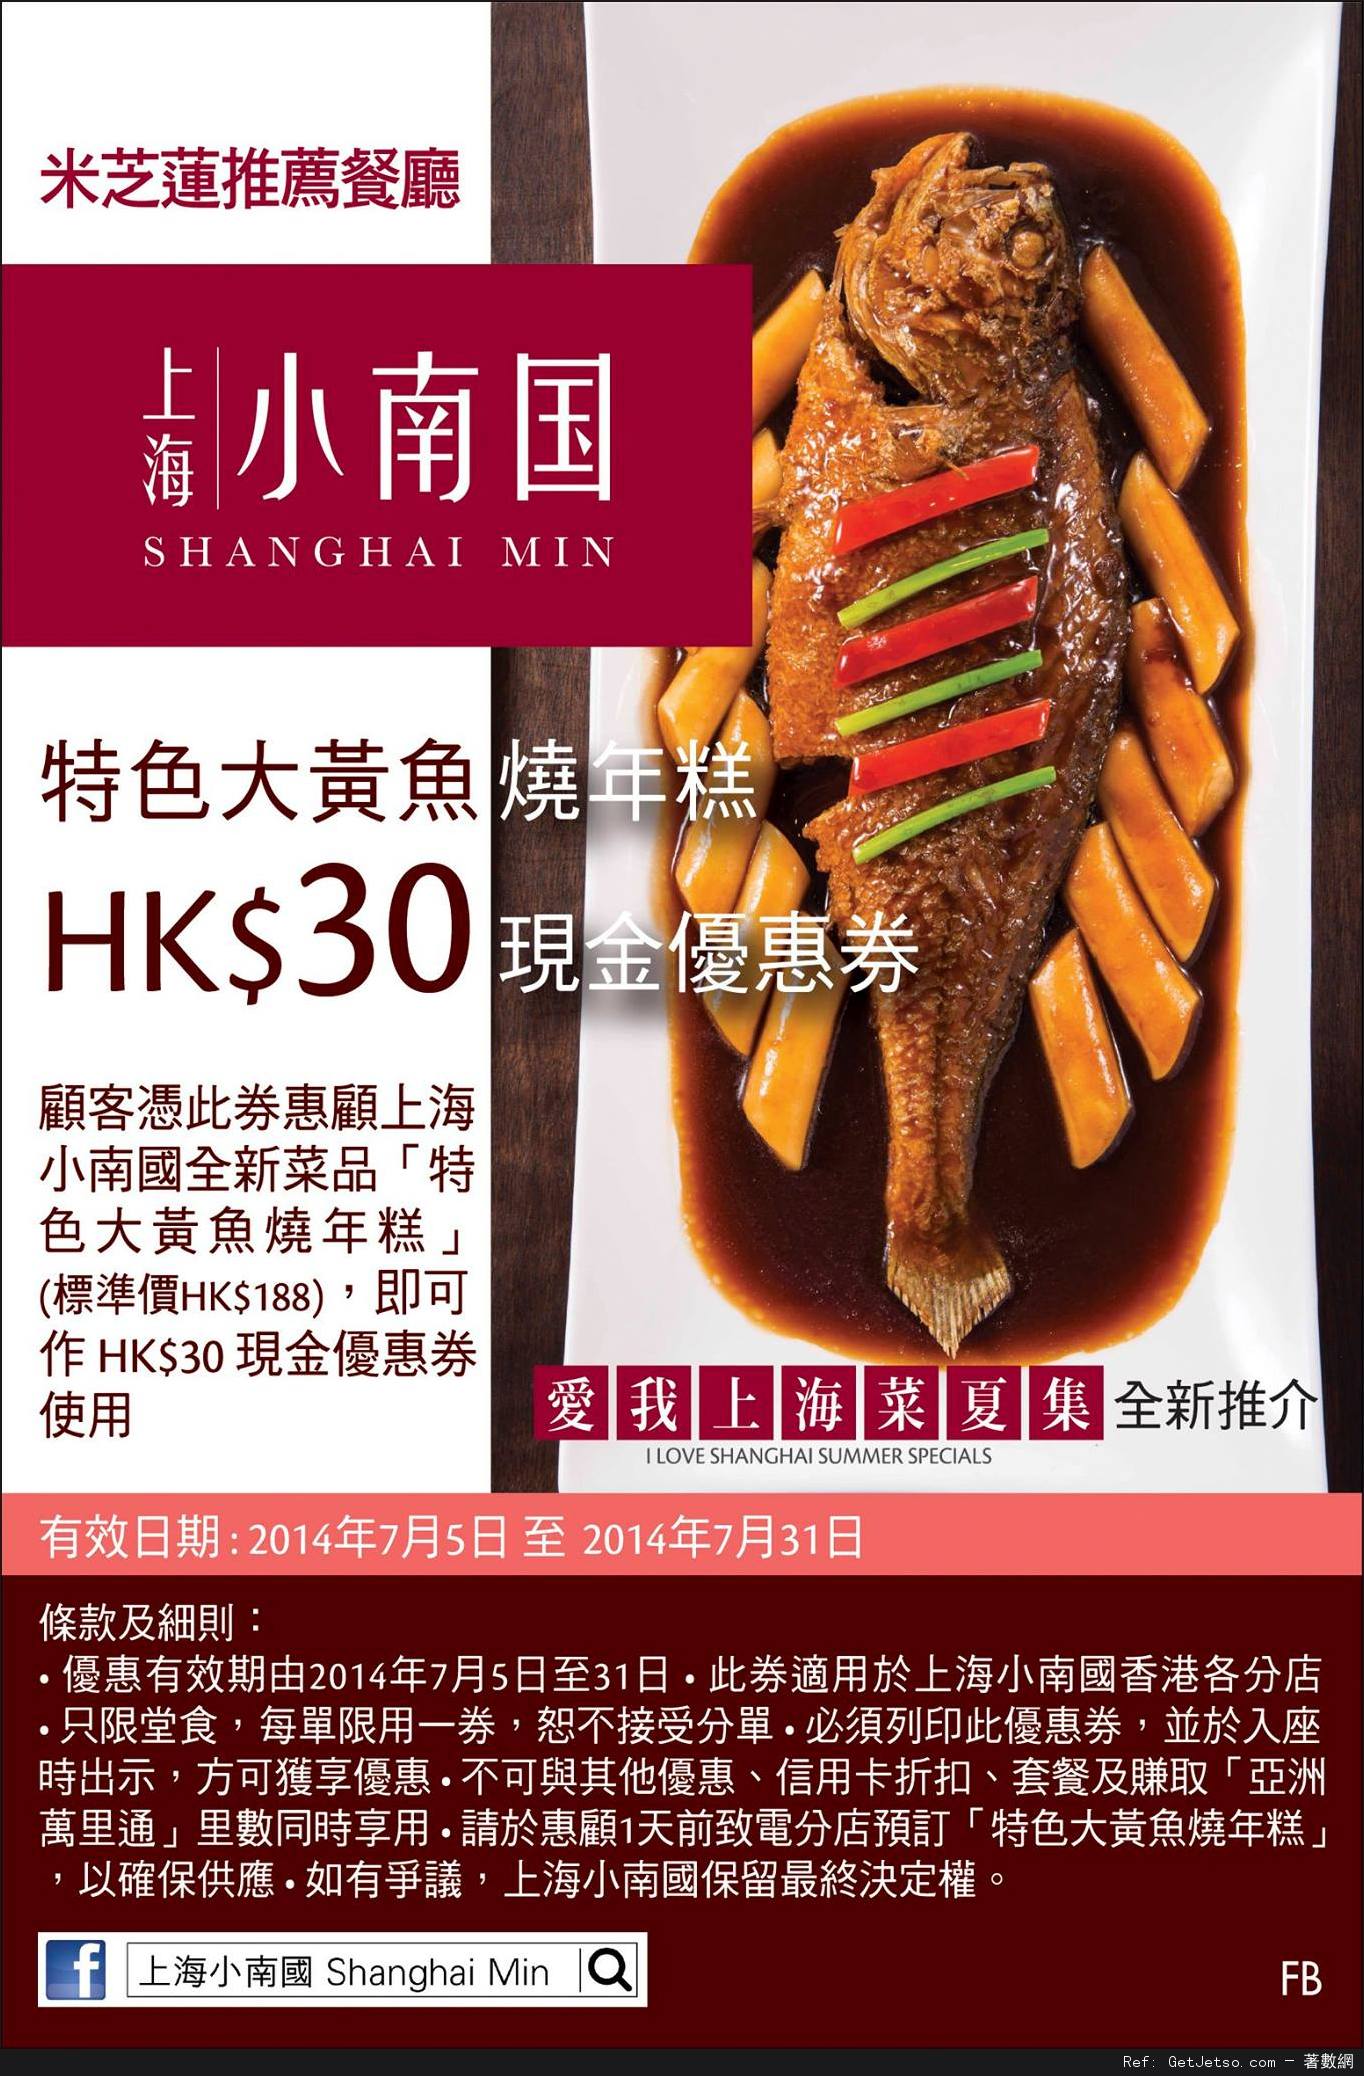 上海小南國「特色大黃魚燒年糕」現金折扣優惠券(至14年7月31日)圖片1